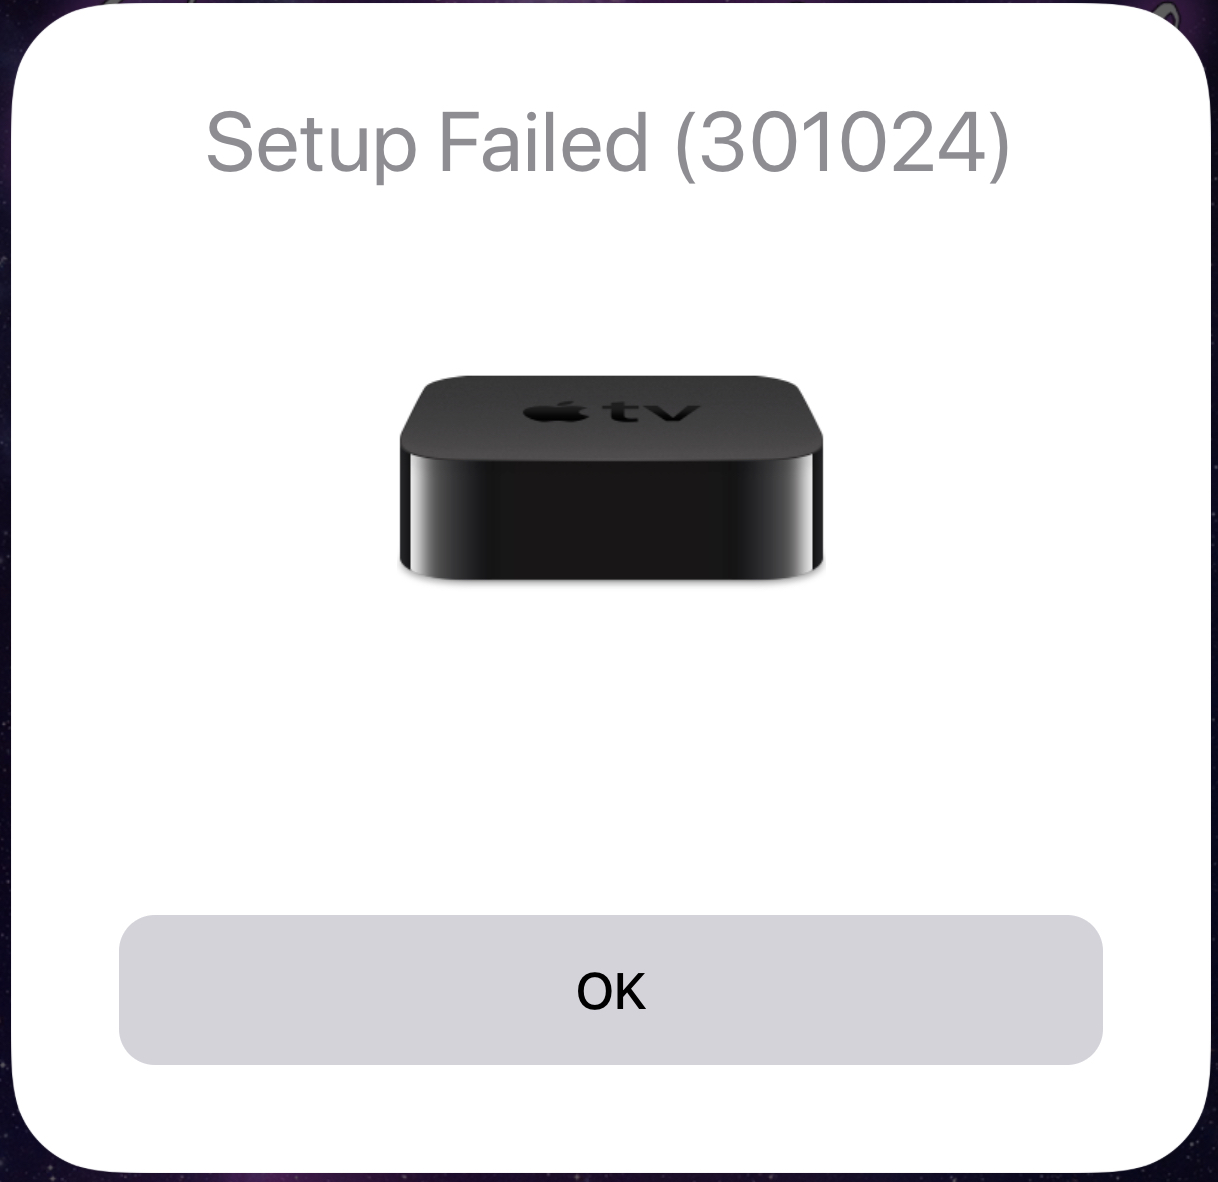 lindring Kvarter svale Apple tv airplay 2 setup failed (71163) - Apple Community